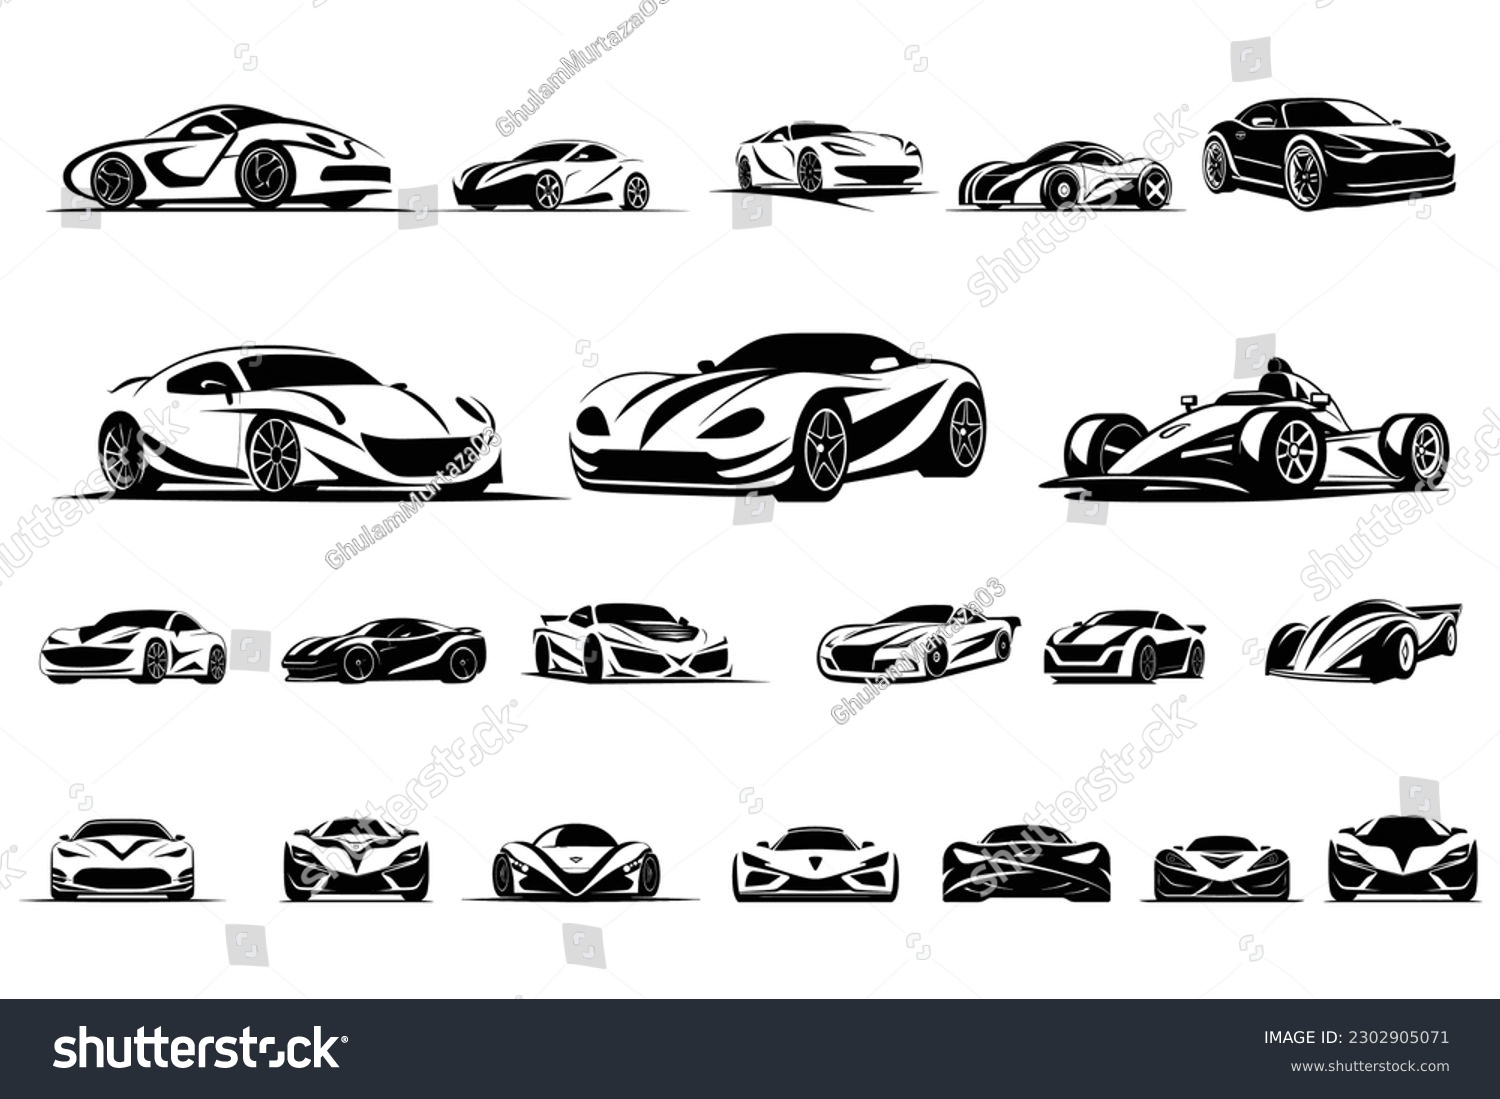 SVG of 21 Cars Design SVG and Car Vector Bundle svg